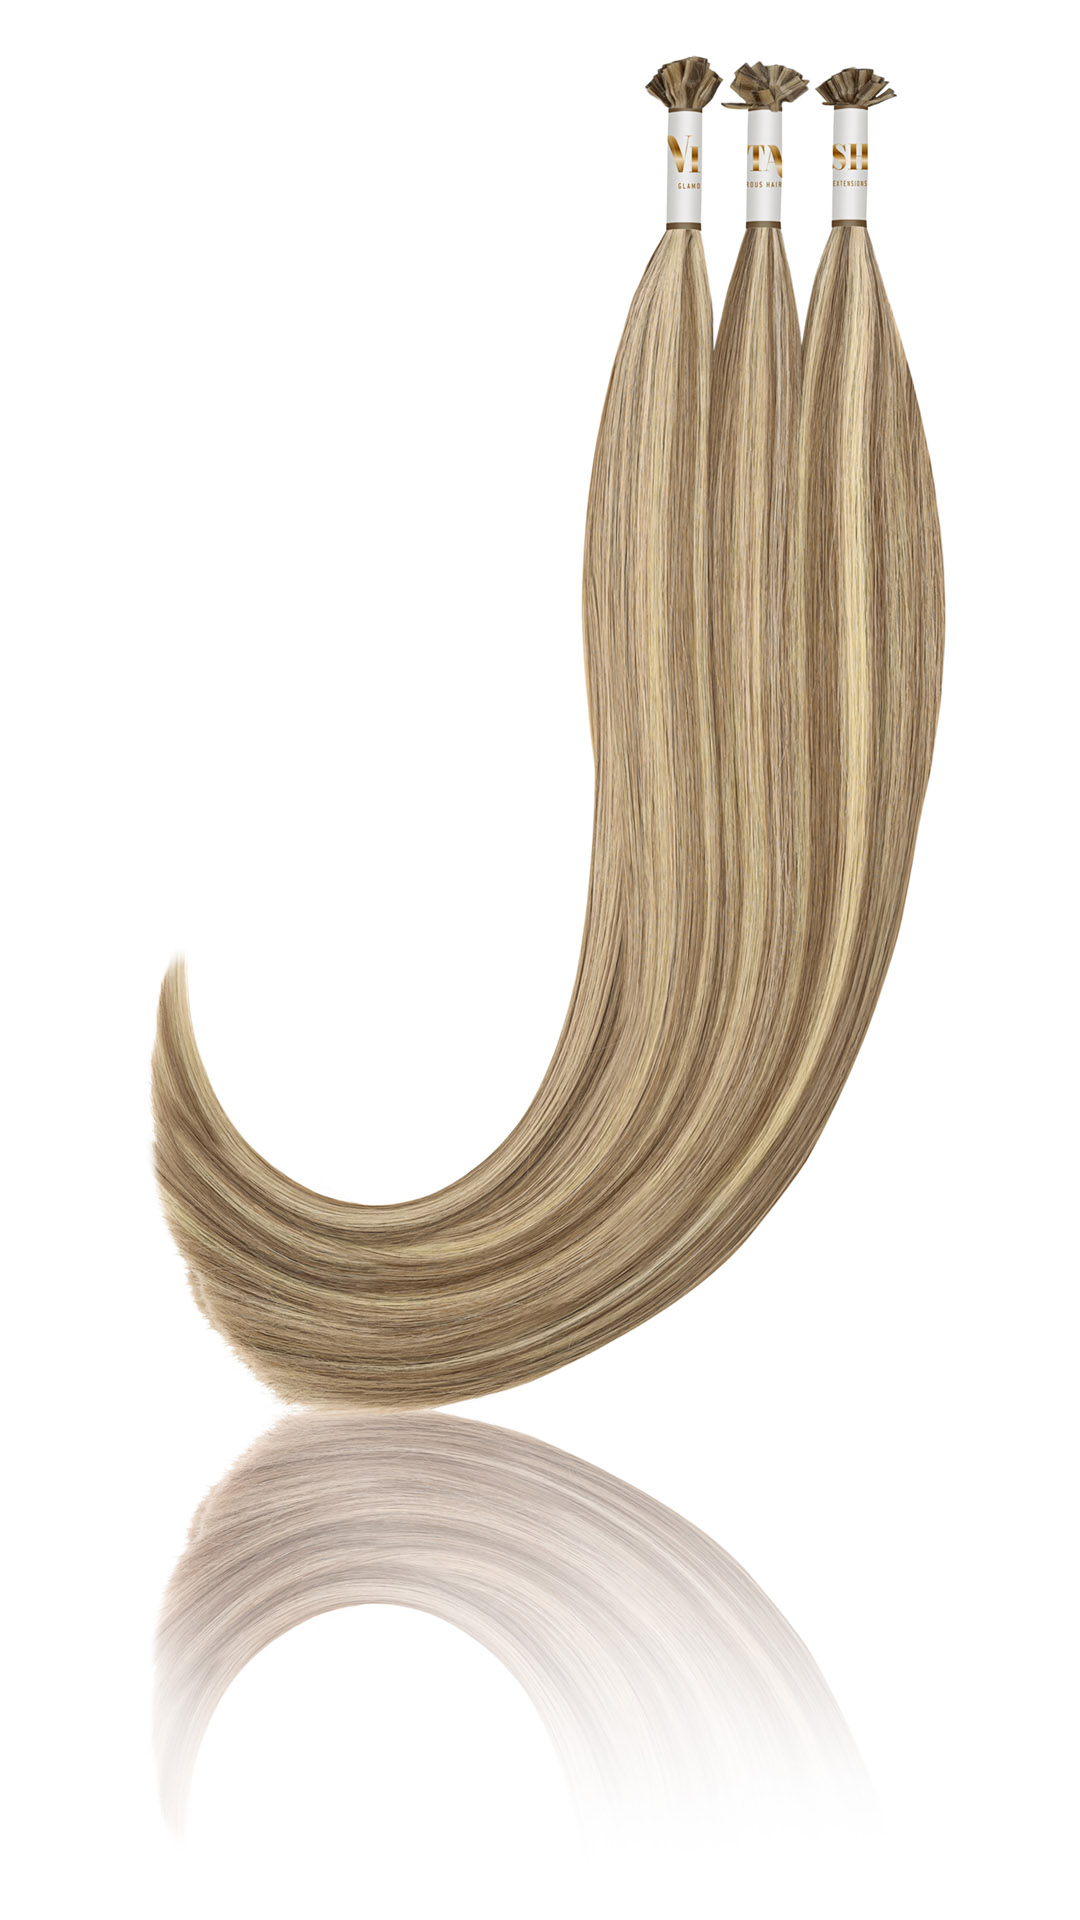 25 Russisches Echthaar | Bonding | Haarverlaengerung | Extensions | Farbe # Platinblond Hellaschbraun | 50cm